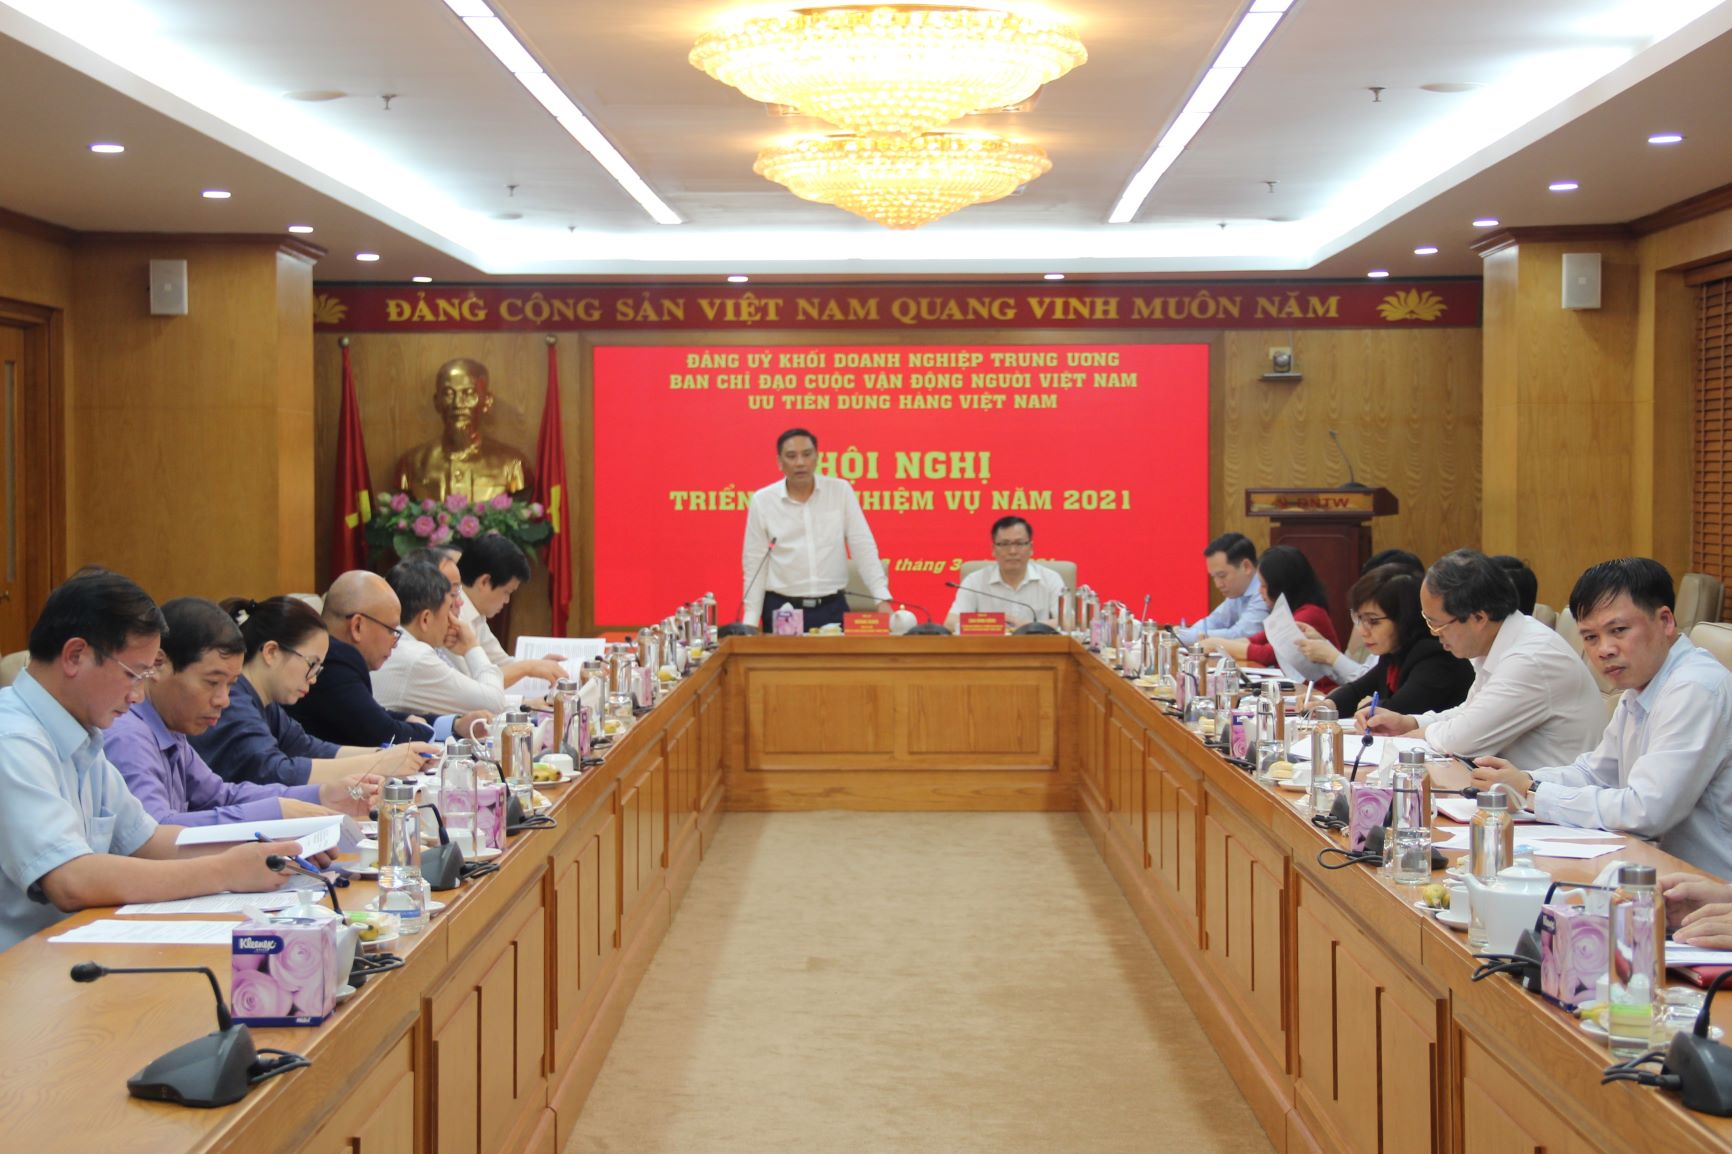 Đồng chí Hoàng Giang- Phó Bí thư Đảng ủy Khối, Trưởng Ban Chỉ đạo phát biểu chỉ đạo.